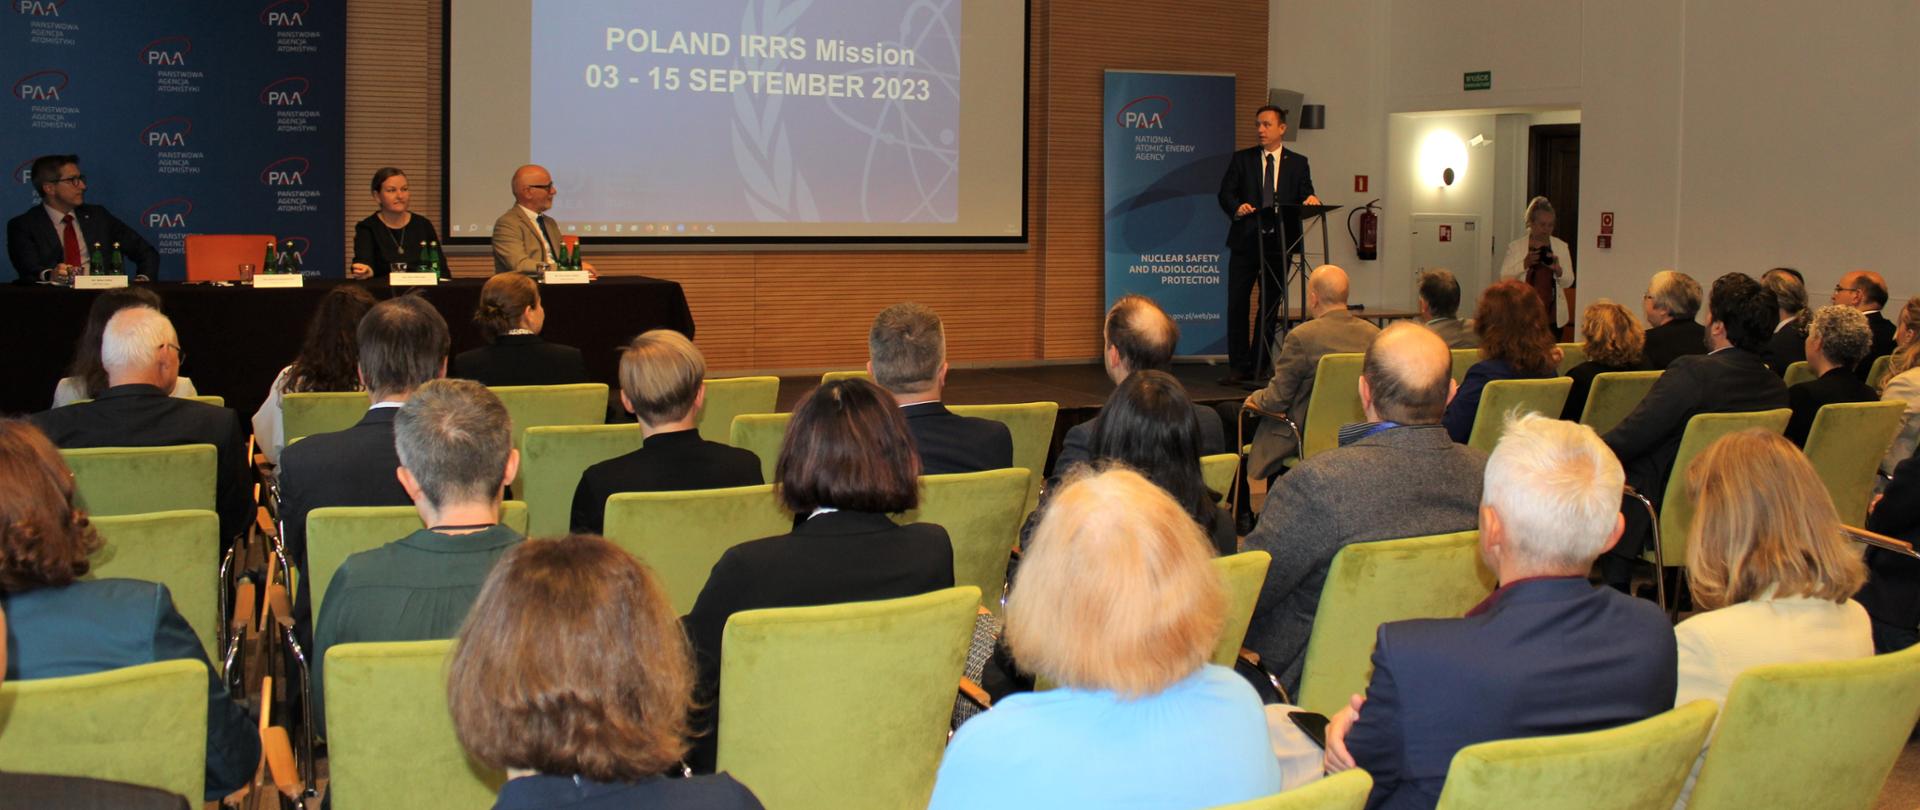 Misja IRRS w Polsce - spotkanie zamknięcia misji. Uczestnicy siedzą na sali plenarnej. Prezes PAA przemawia do zebranych 